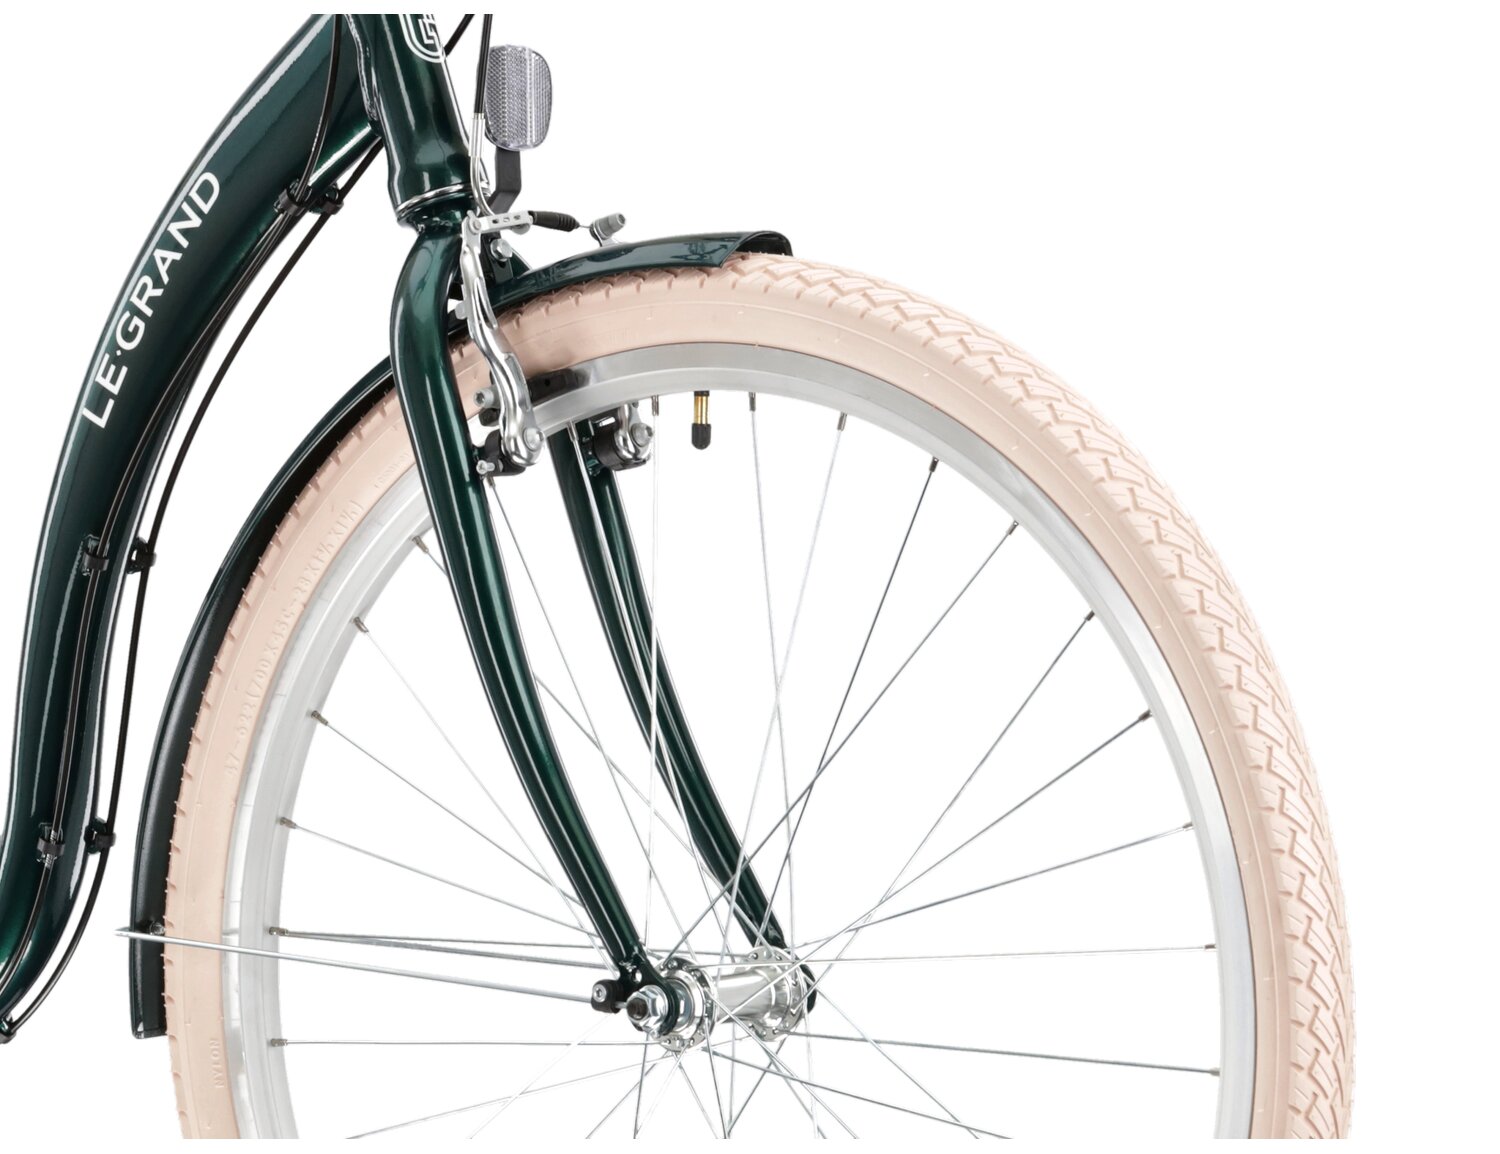 Aluminowa rama, sztywny stalowy widelec oraz opony o szerokości 1,75 cala w rowerze miejskim Le Grand Lille 2 